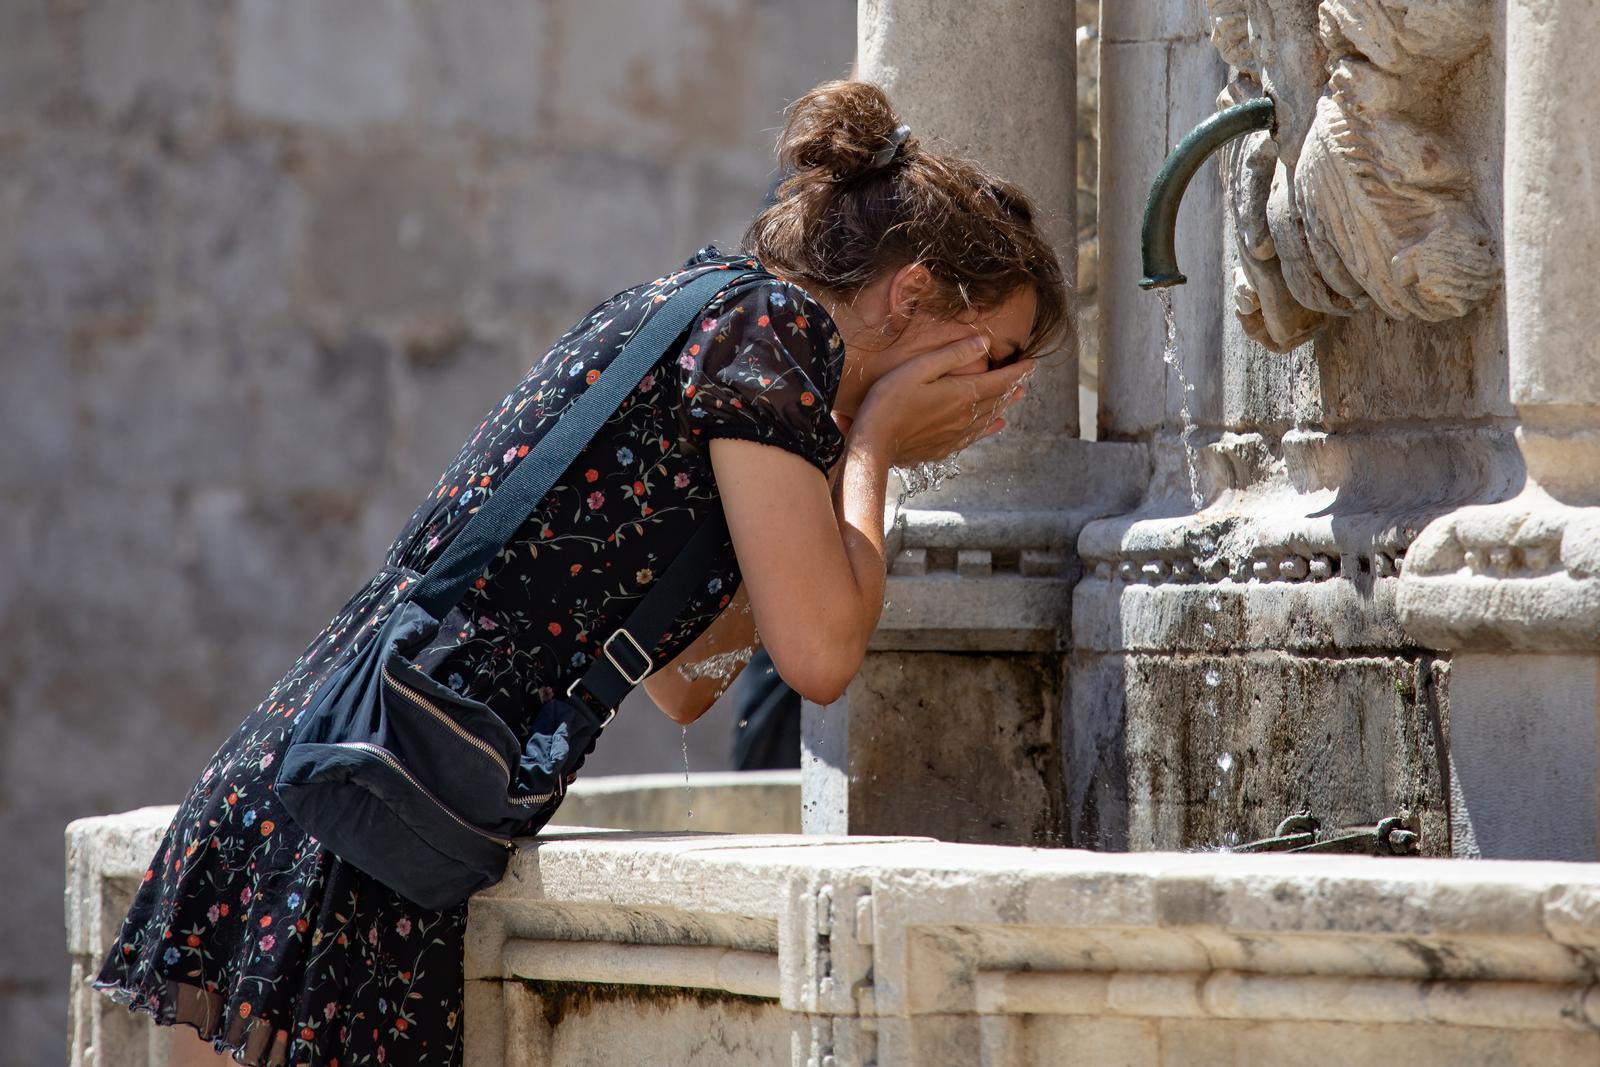 02.08.2020., Dubrovnik - MAli broj prolaznika odlucio se na setnju Stradunom, a oni koji jesu, potrazili su osvjezenje na fontani ili u moru.rPhoto: Grgo Jelavic/PIXSELL